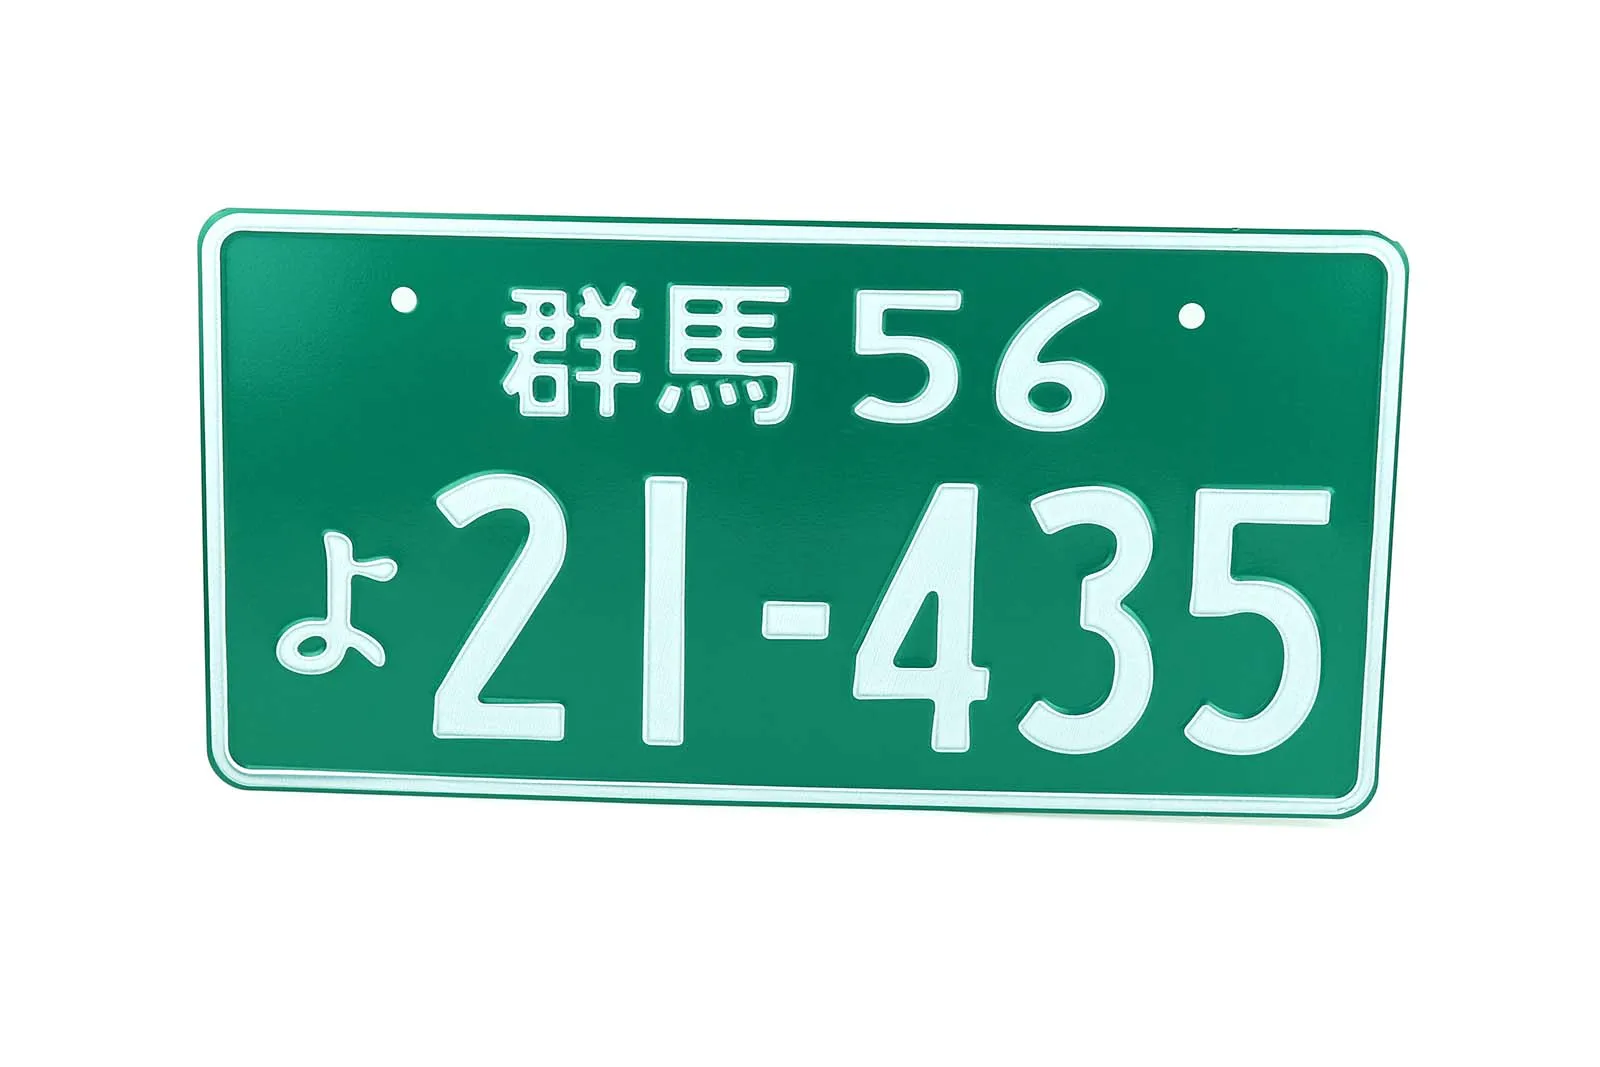 JDM японский стиль номерной знак Алюминиевый номерной знак для универсального автомобиля